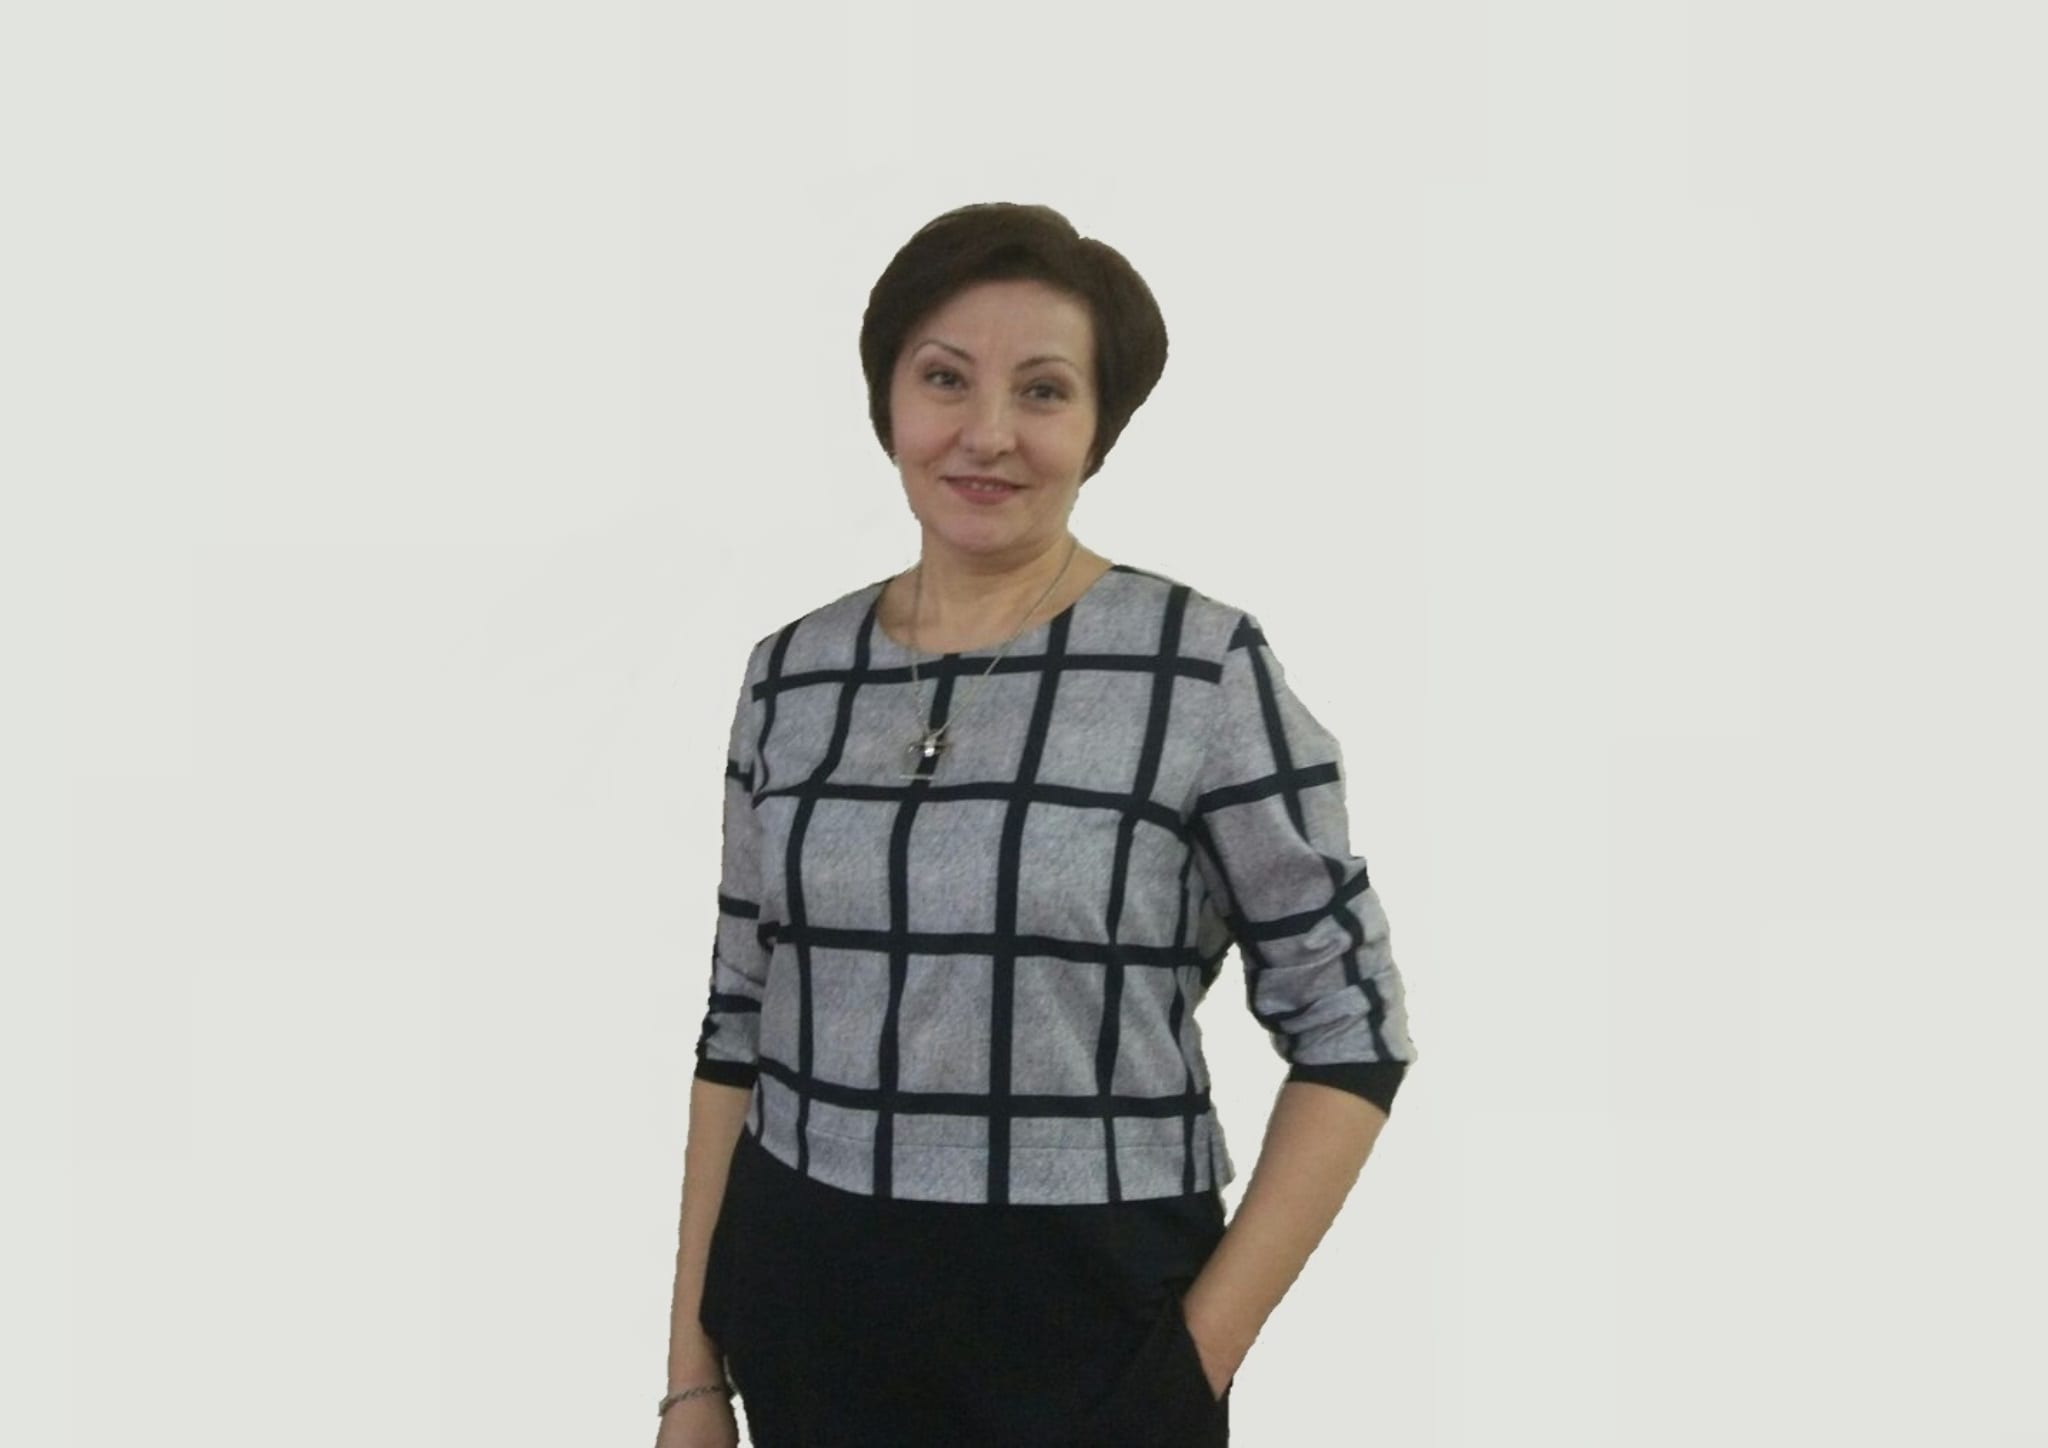 Olga Fugedji